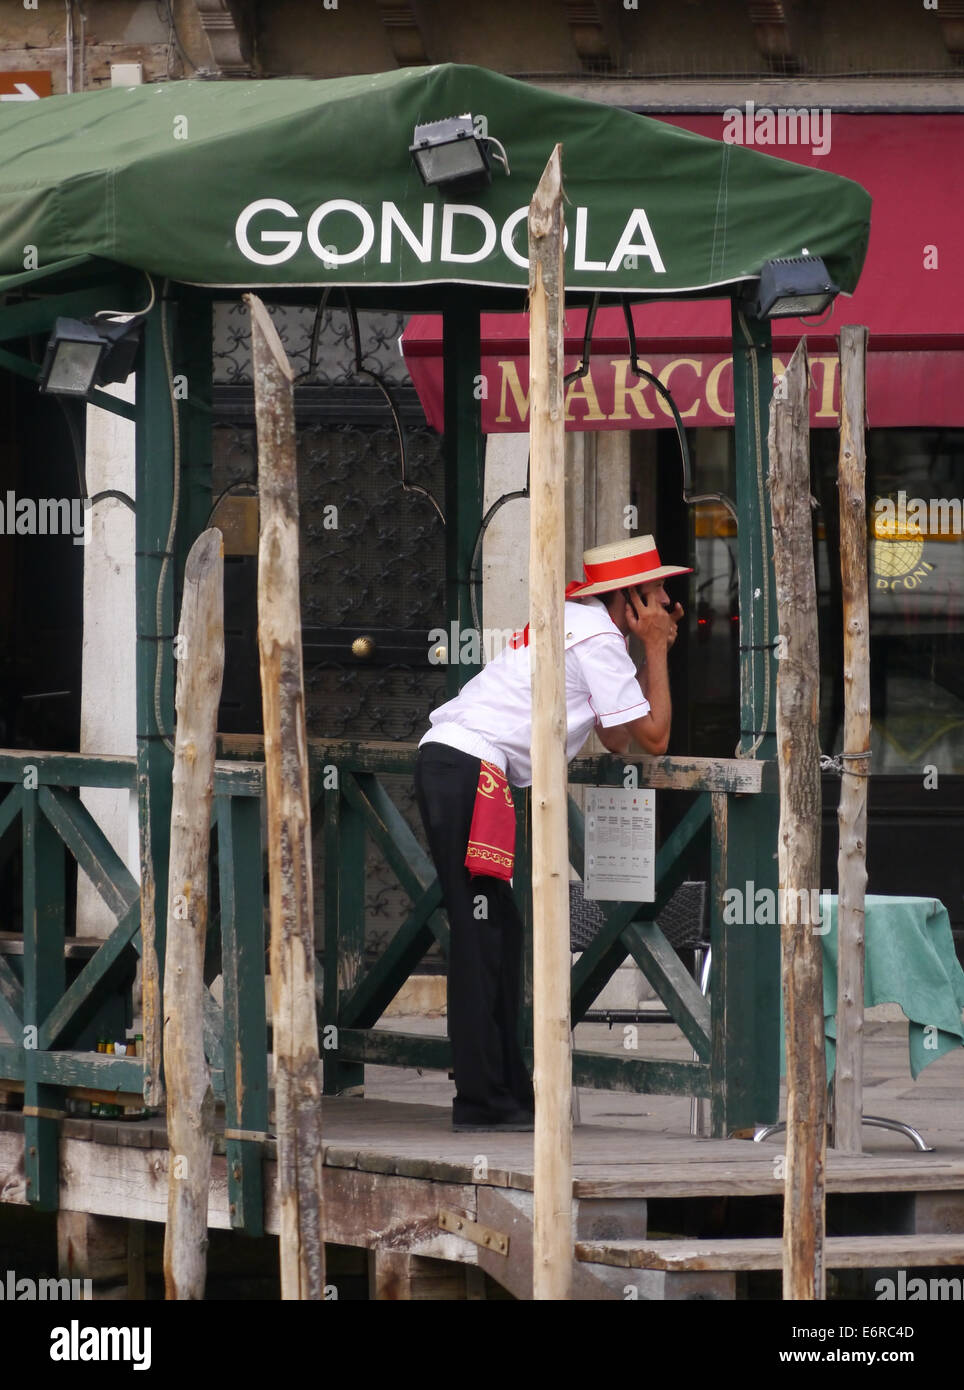 Ein Gondoliere in Venedig suchen gelangweilt stützte sich auf eine Bahn warten auf den nächsten Fahrgast Stockfoto